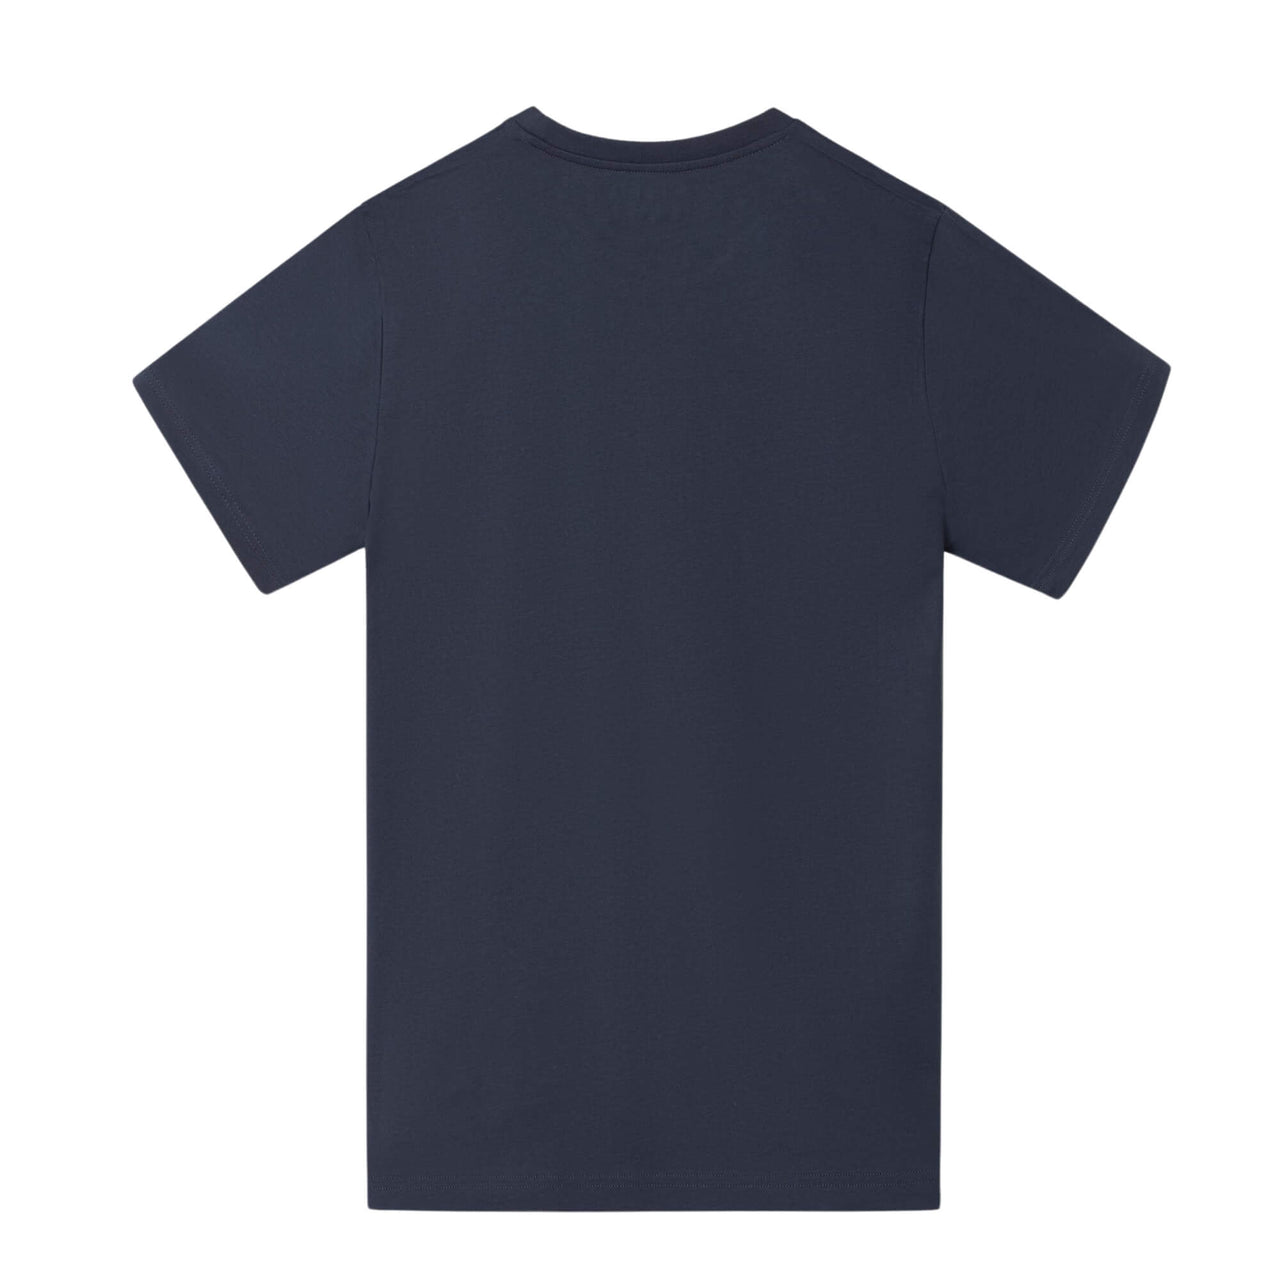 Camisetas Silbon Hombre Raqueta Media Azul Marino